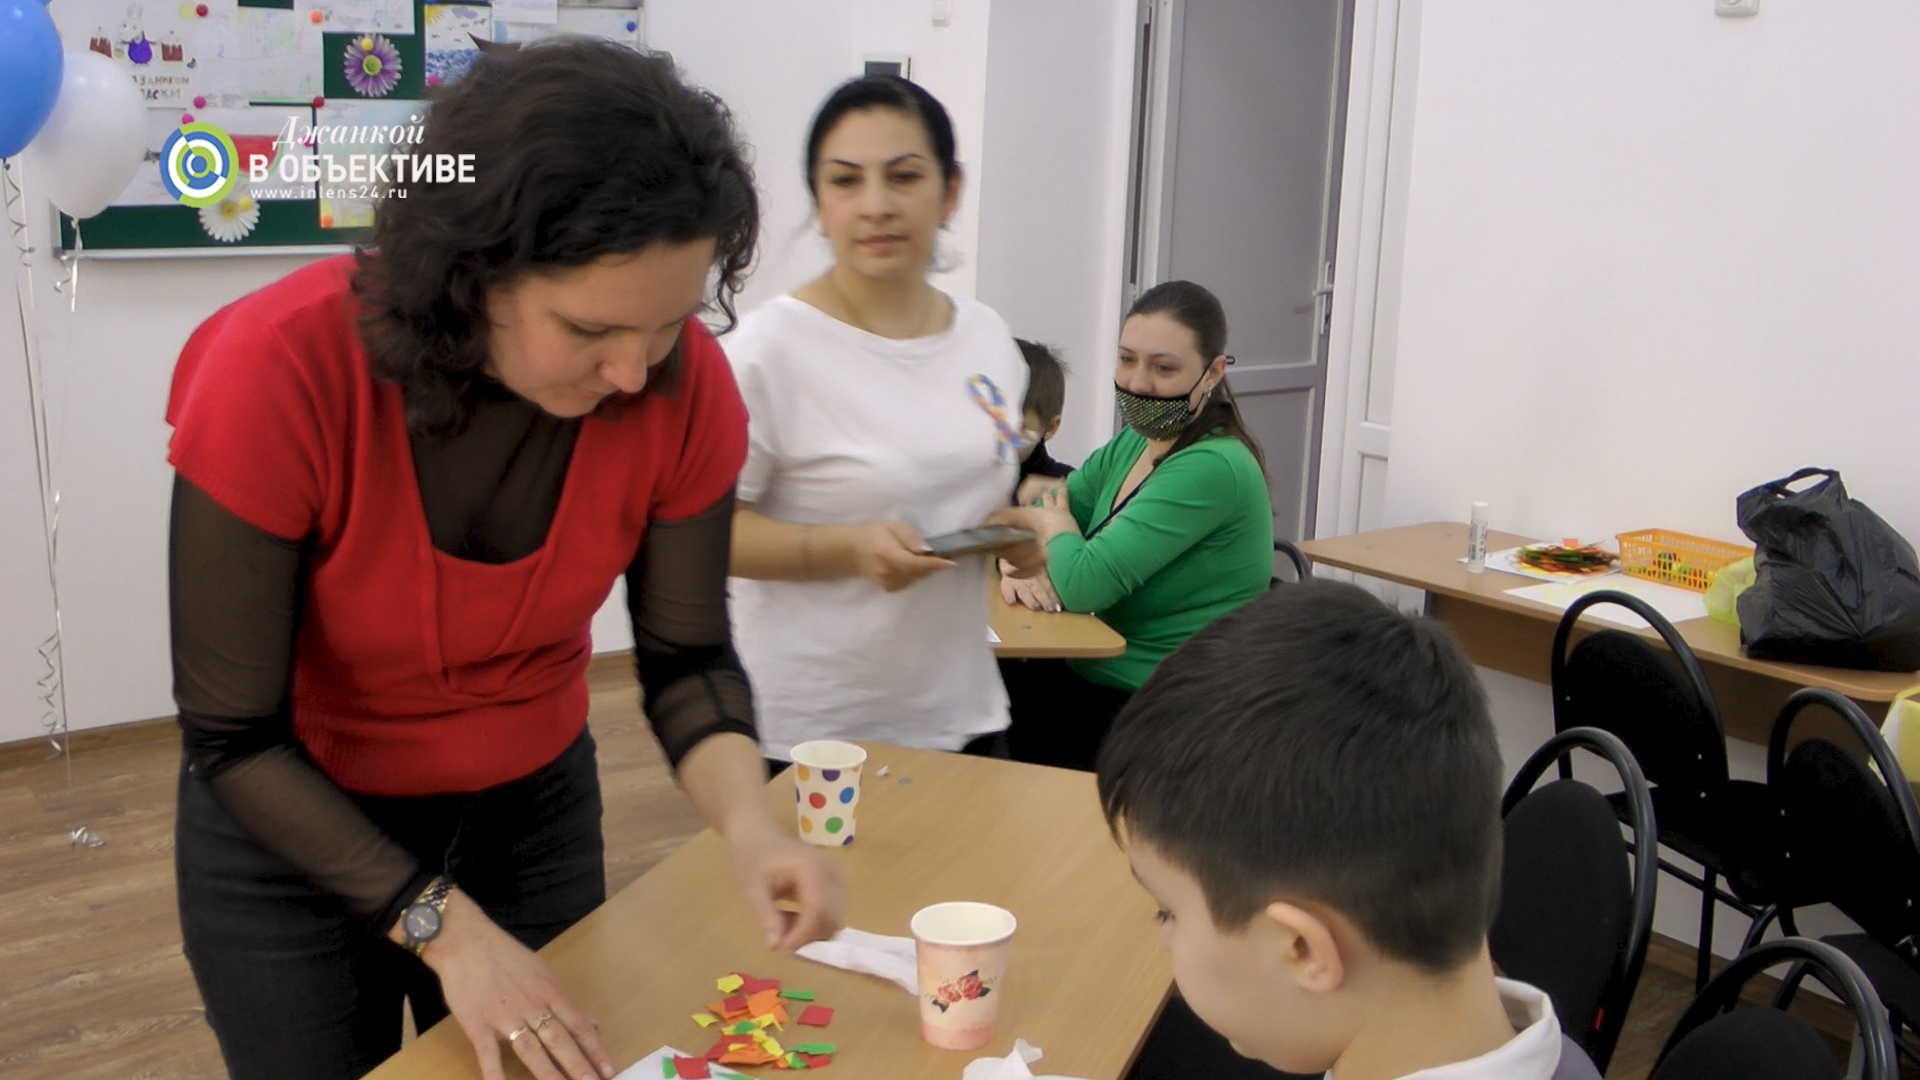 Дети аутисты в поле зрения творческих работников Джанкойского ЦКиД